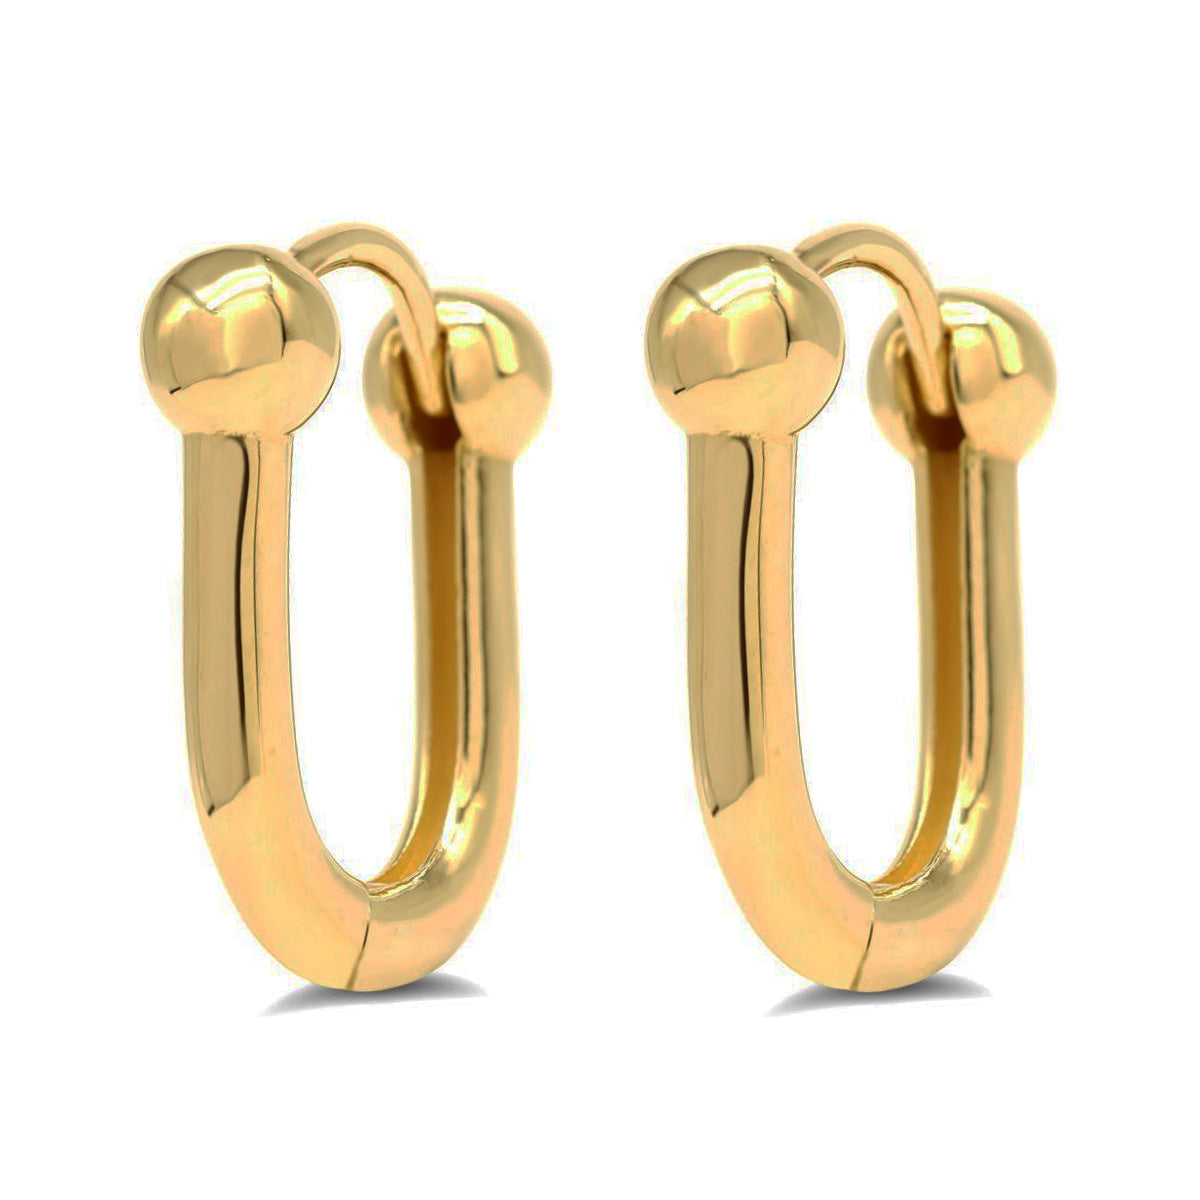 EHG0213, Gold Earrings, Huggies